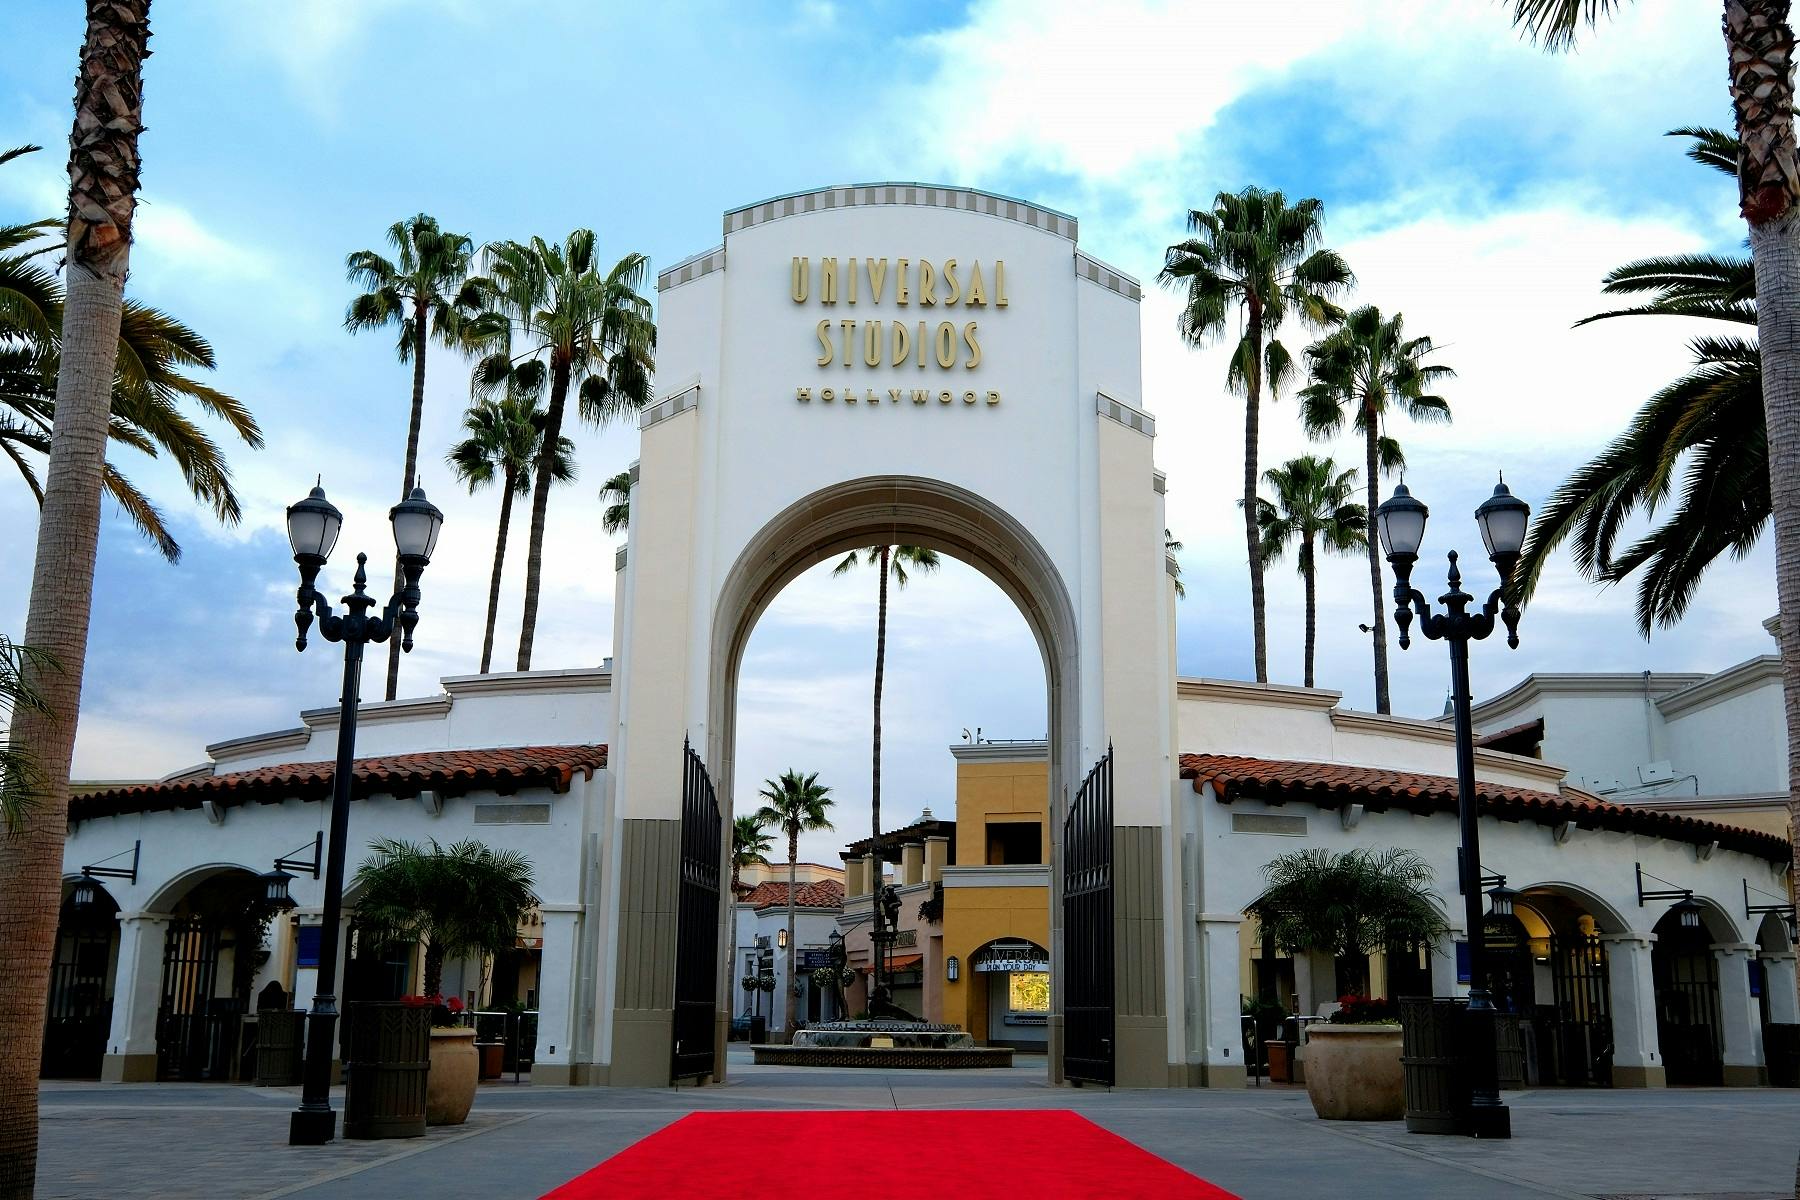 Biljetter till Universal Studios Hollywood allmän entré